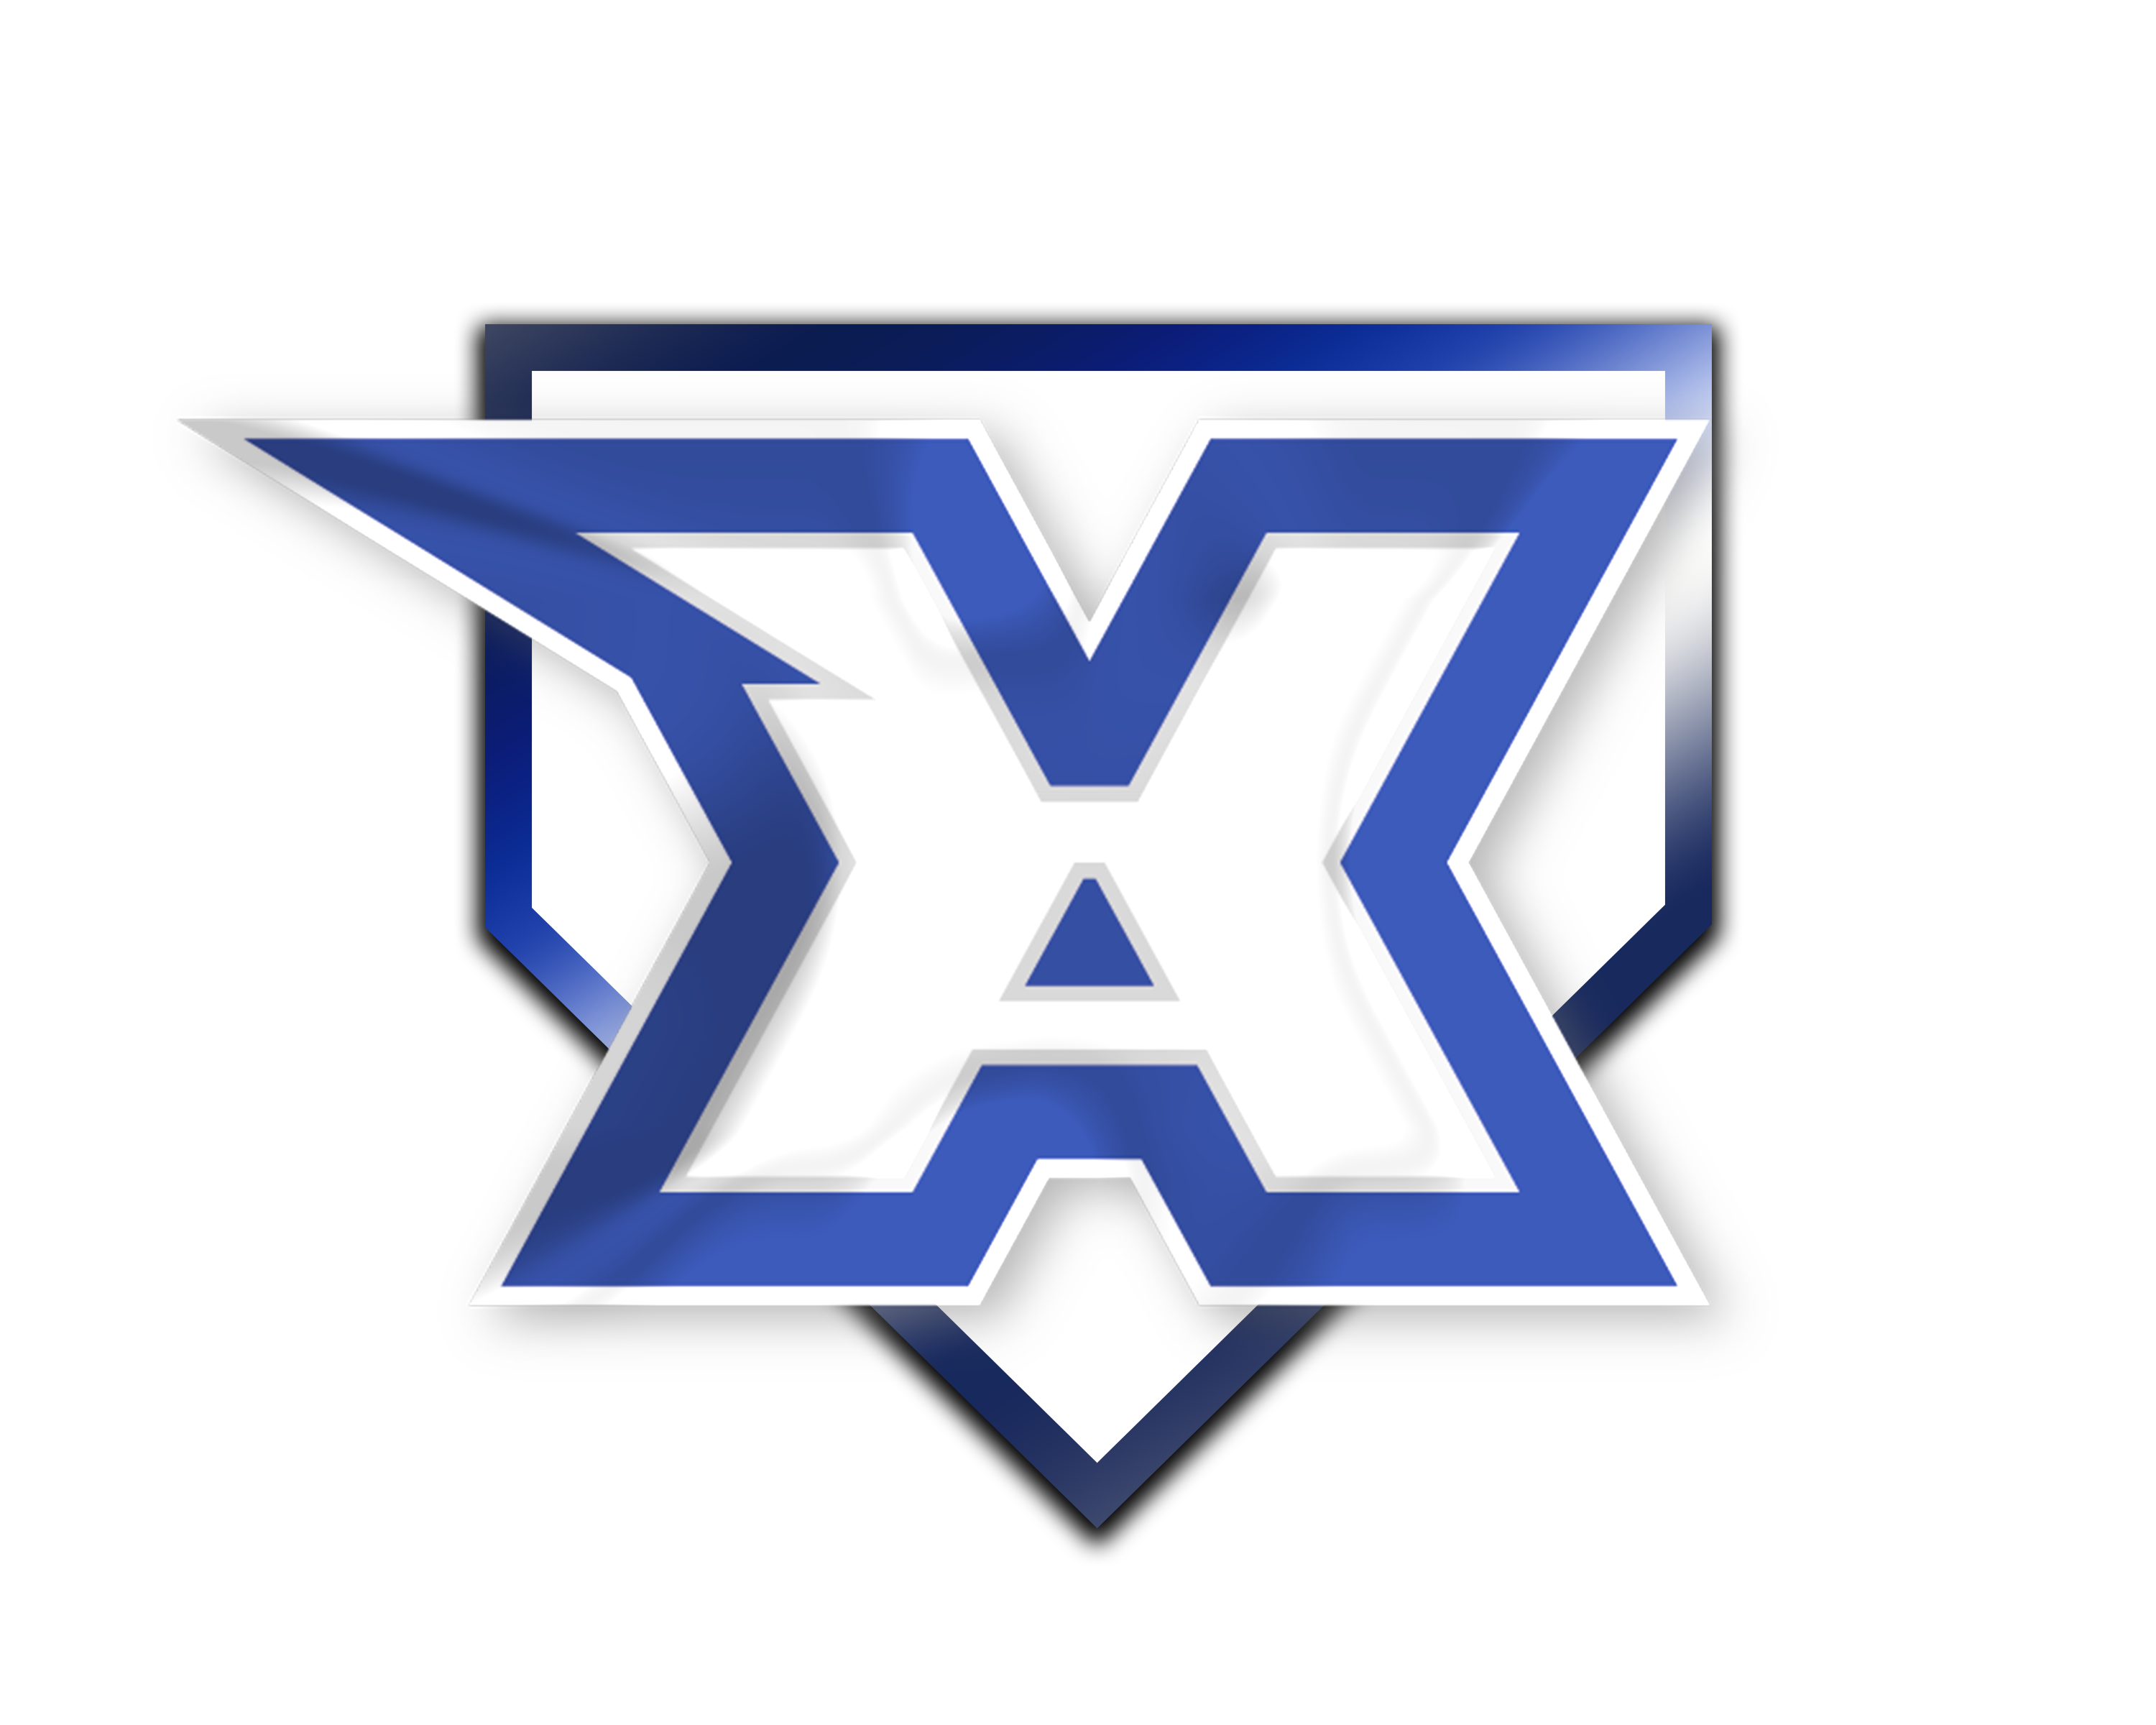 Xtreme logo w Homeplate copy